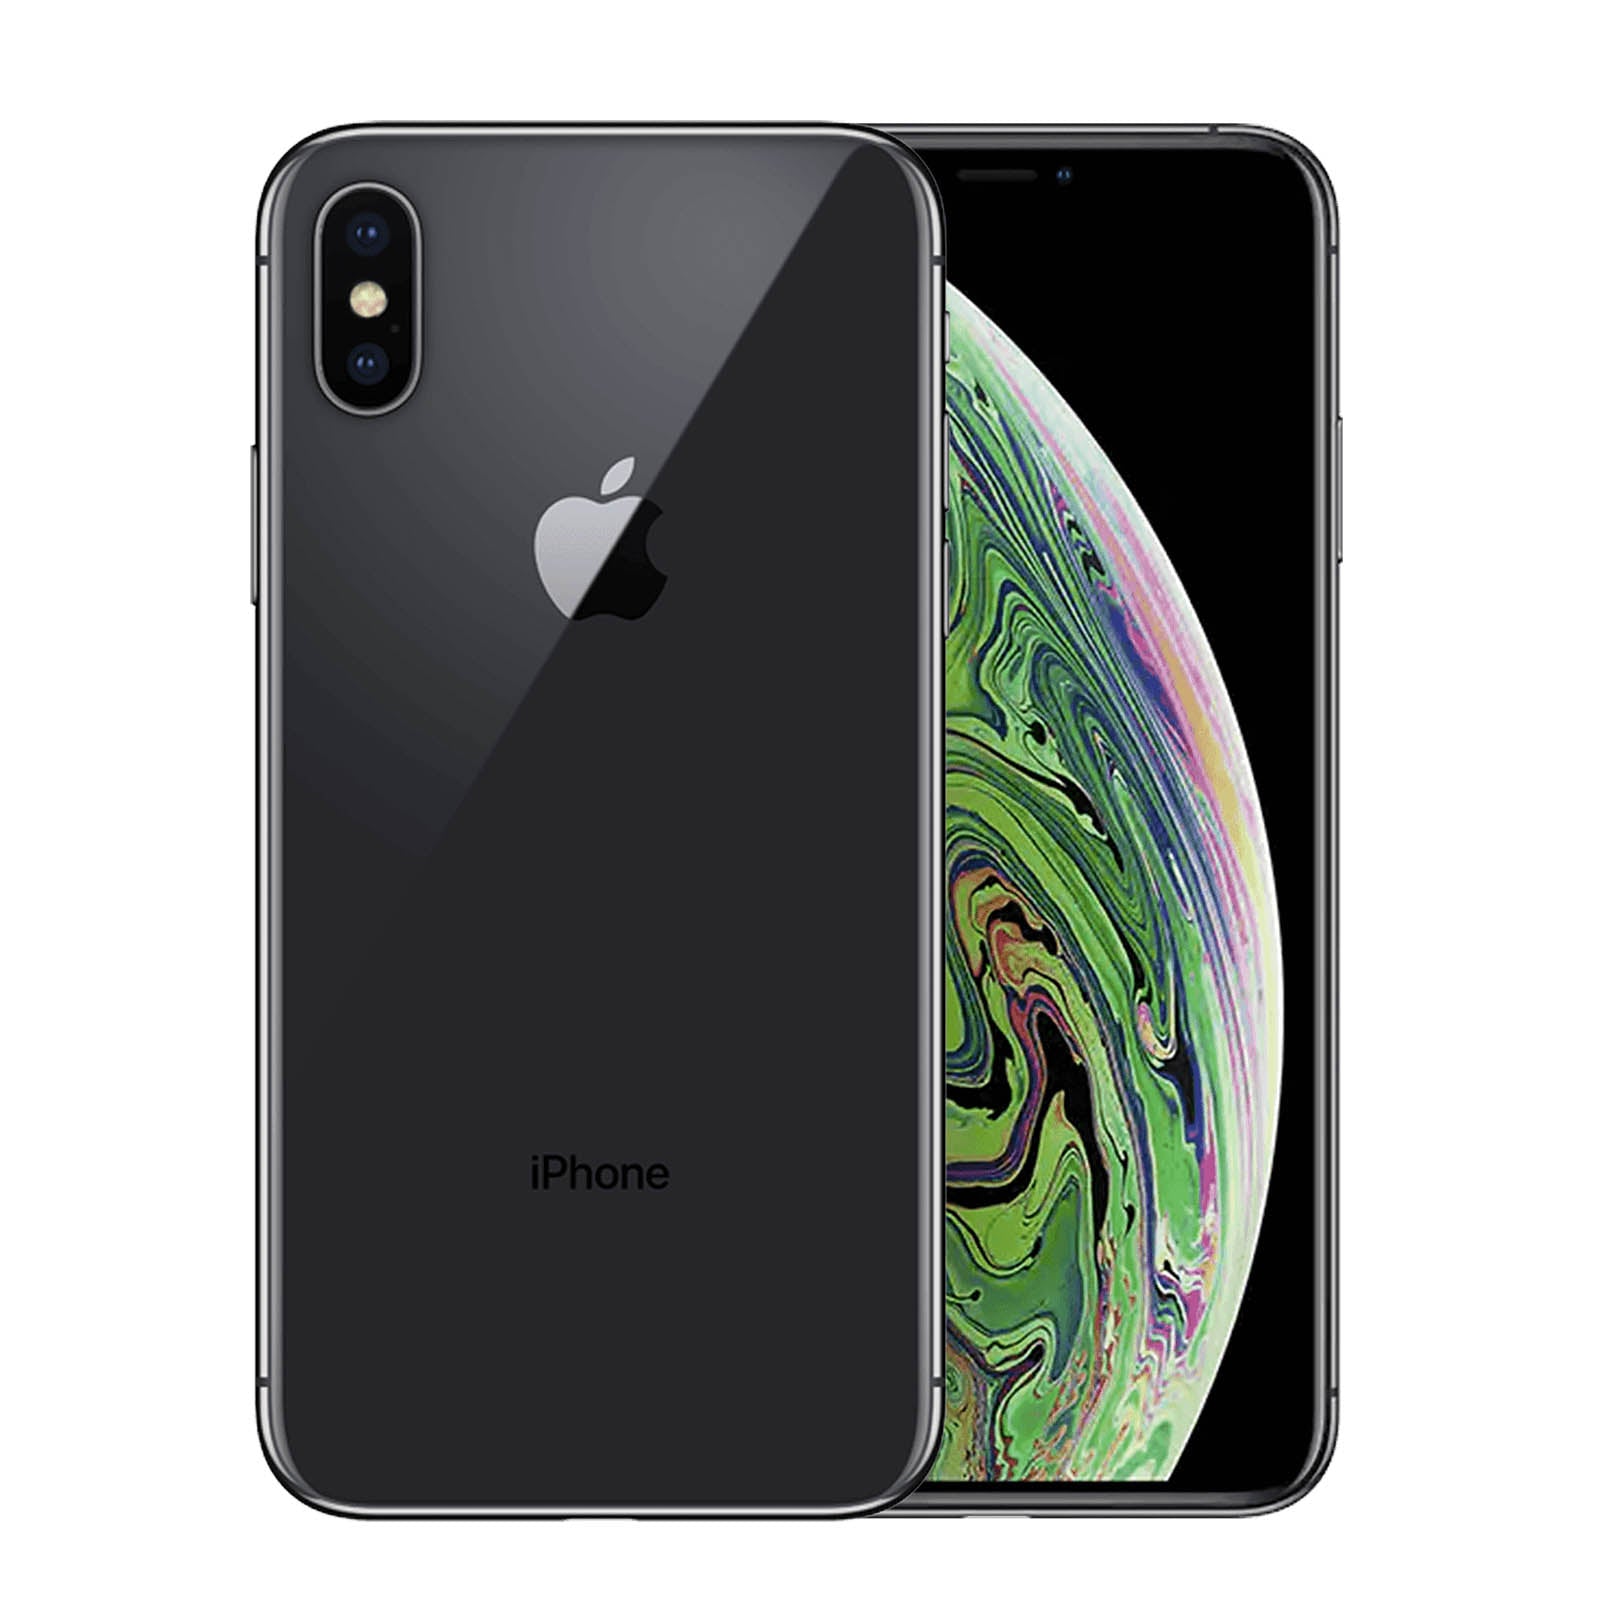 Apple iPhone XS 64GB - Space Grey – Loop Mobile - AU